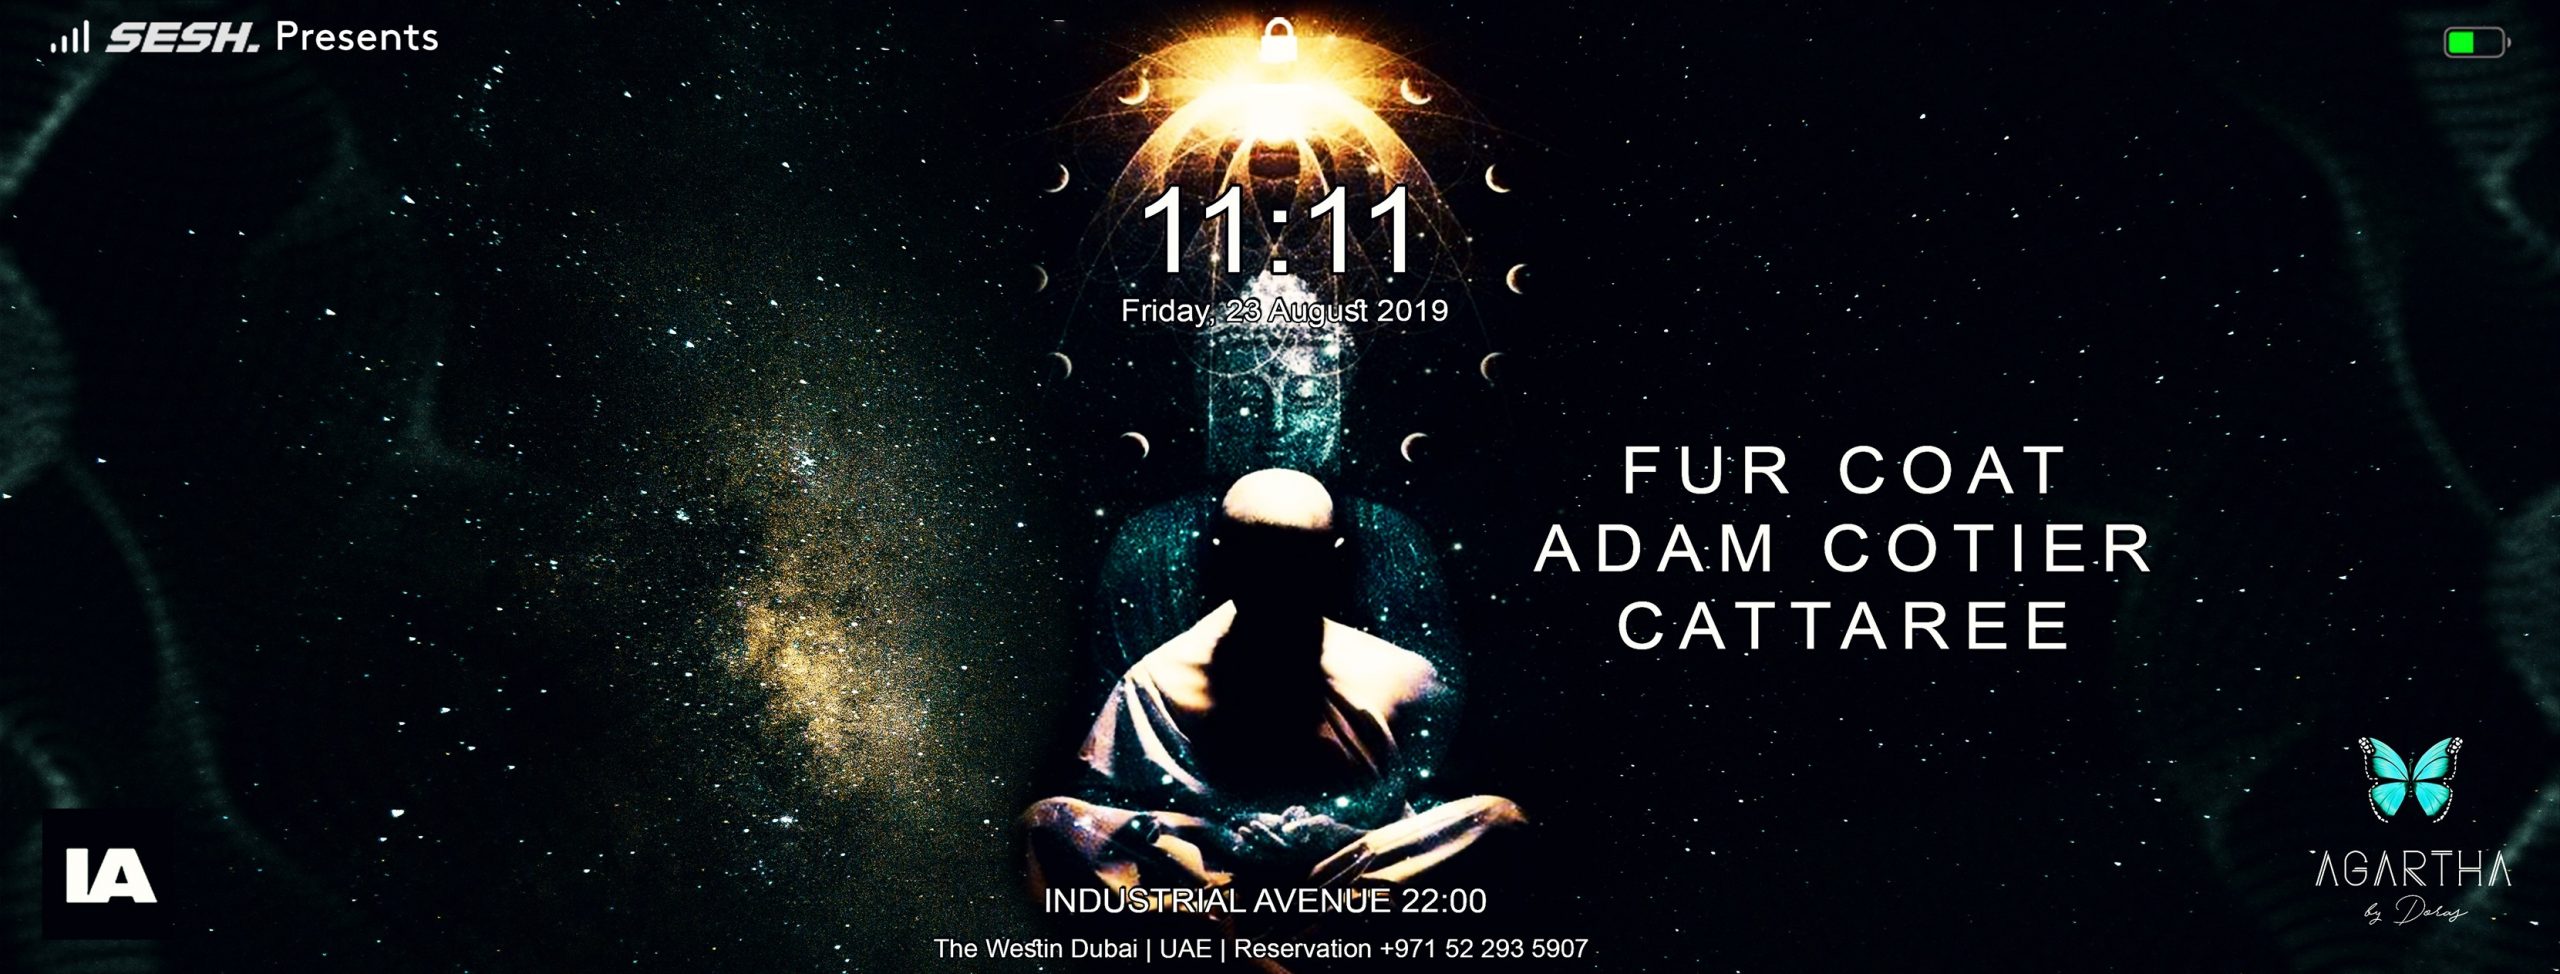 11:11 with Fur Coat, Adam Cotier, Cattaree - Coming Soon in UAE